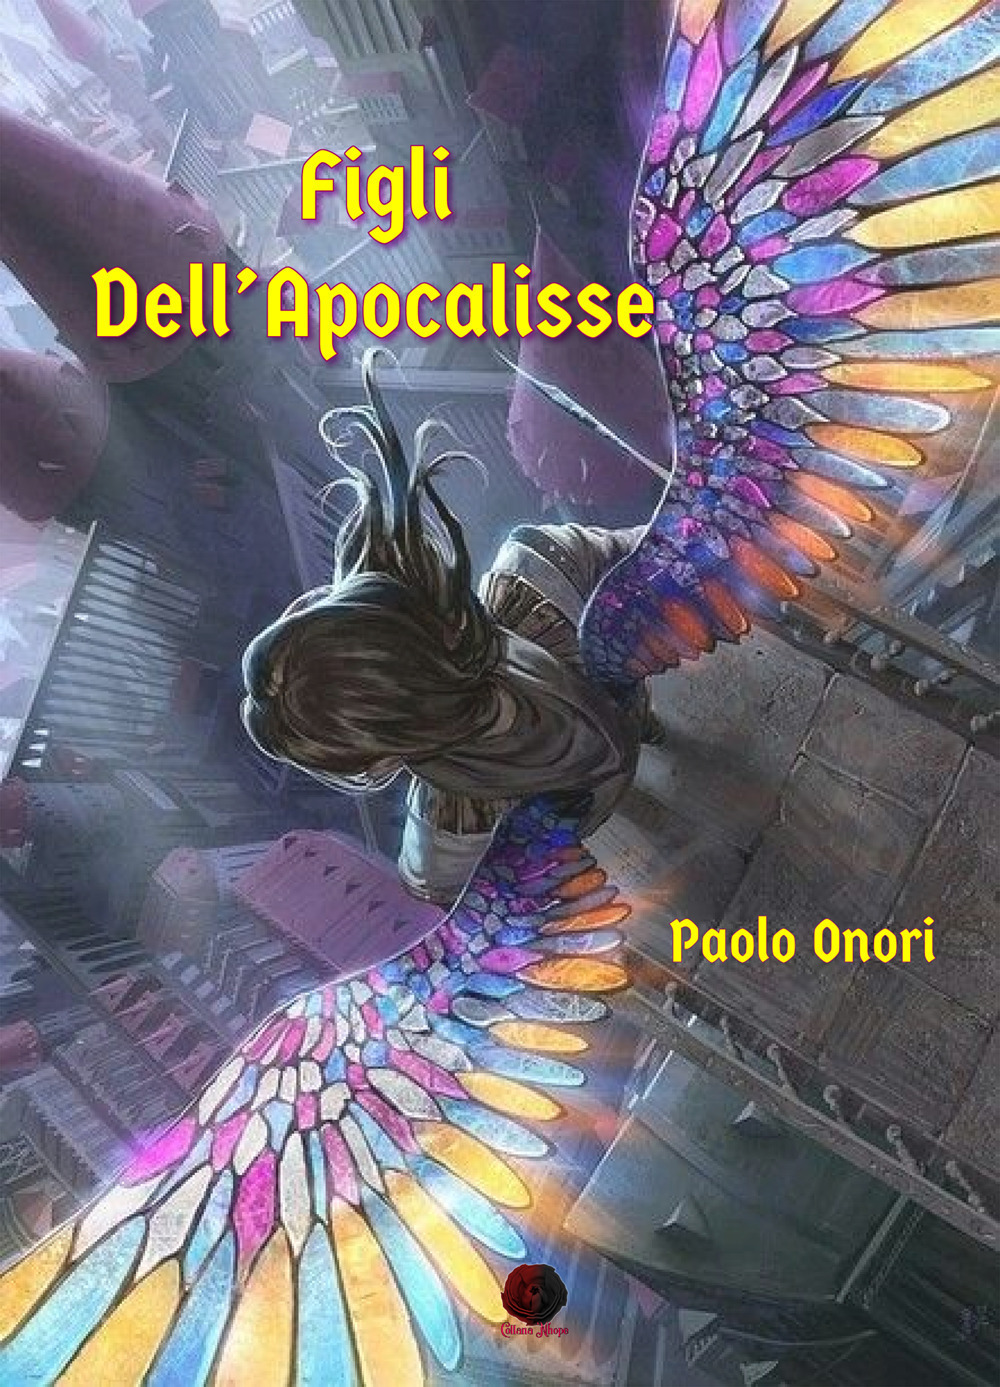 Libri Paolo Onori - Figli Dell'apocalisse NUOVO SIGILLATO, EDIZIONE DEL 24/11/2020 SUBITO DISPONIBILE